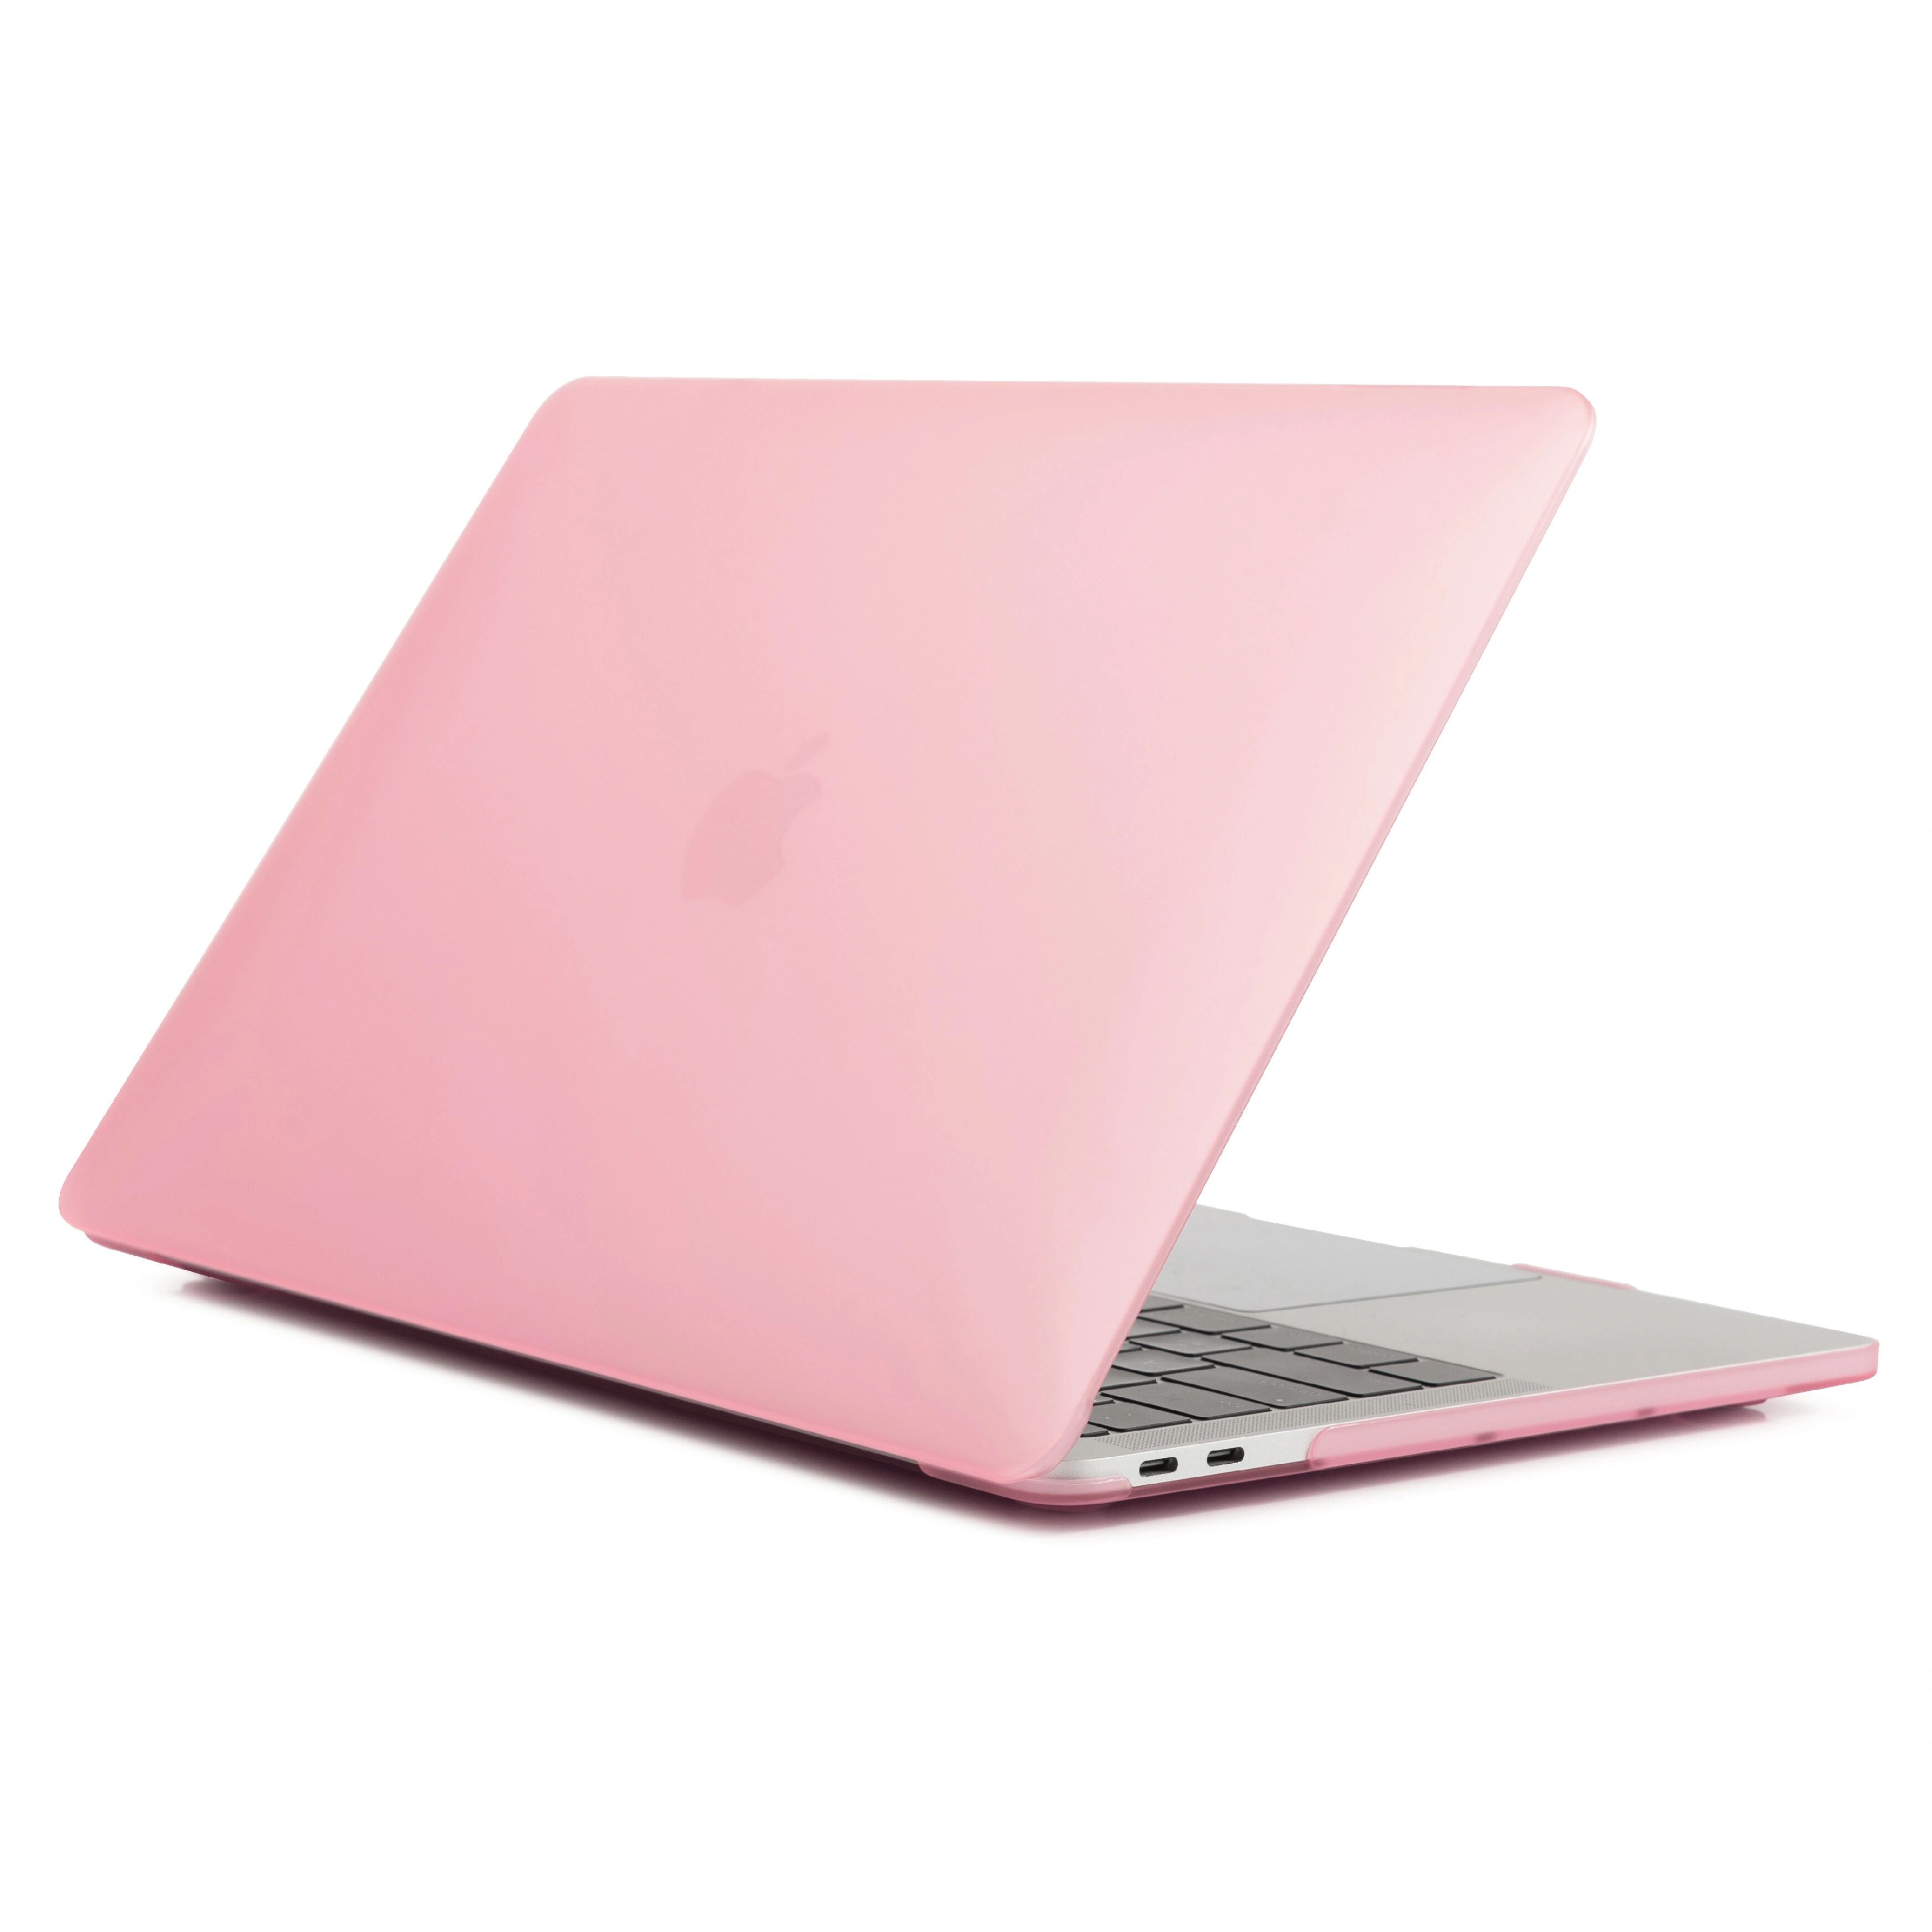 iPouzdro.cz Ochranný kryt na MacBook Pro 13 (2012-2015) - Matte Pink